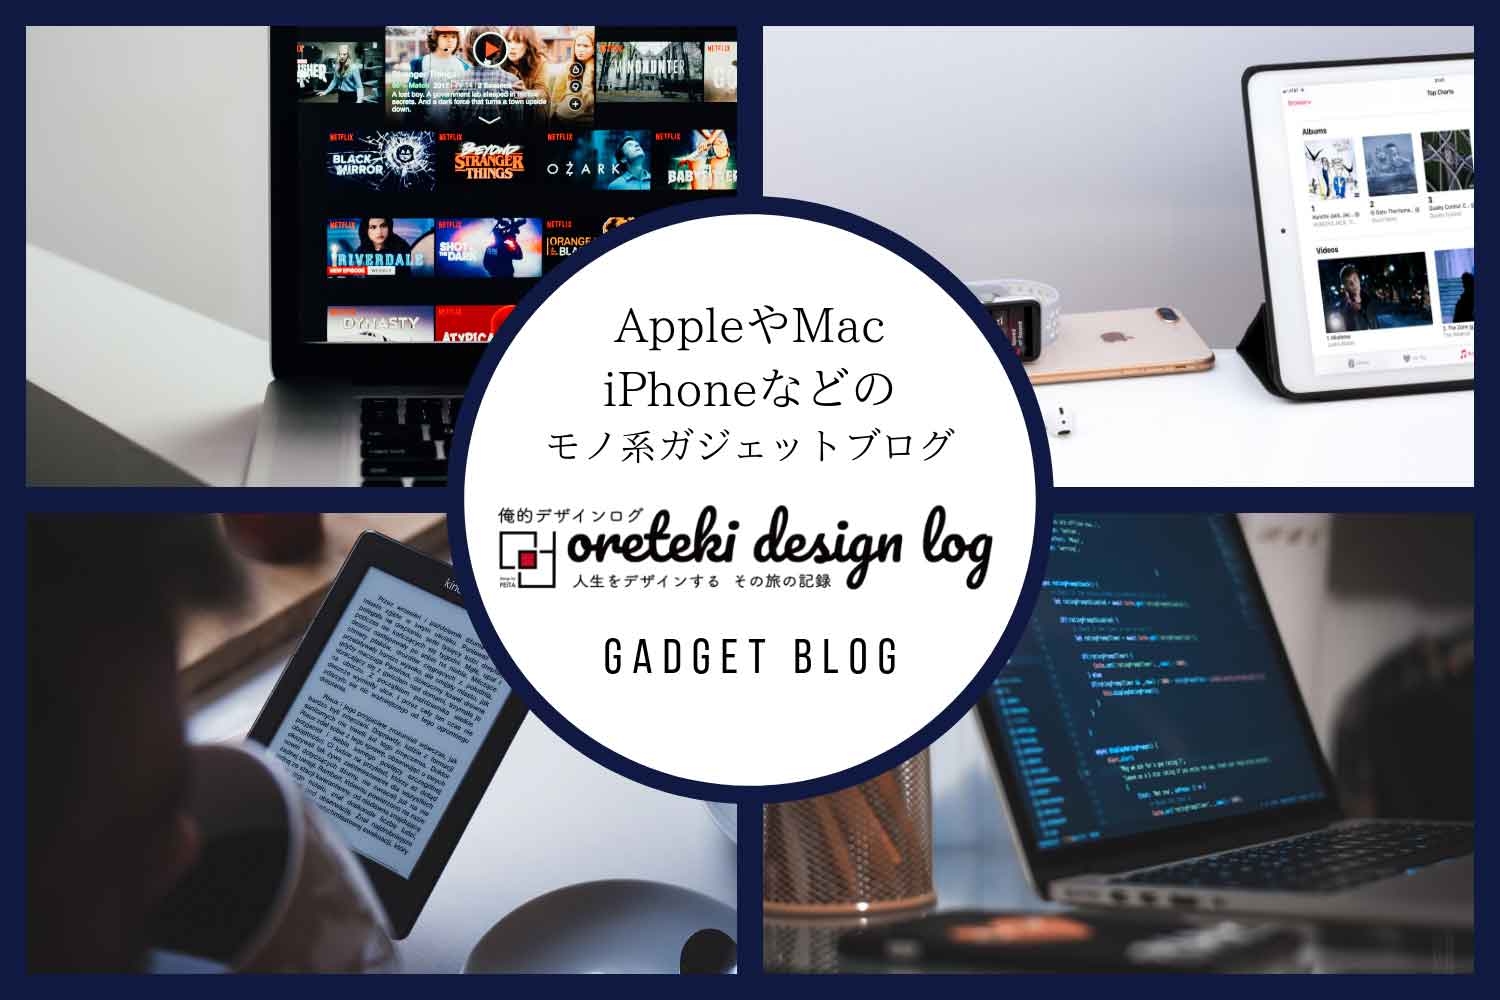 Gadget-Blog